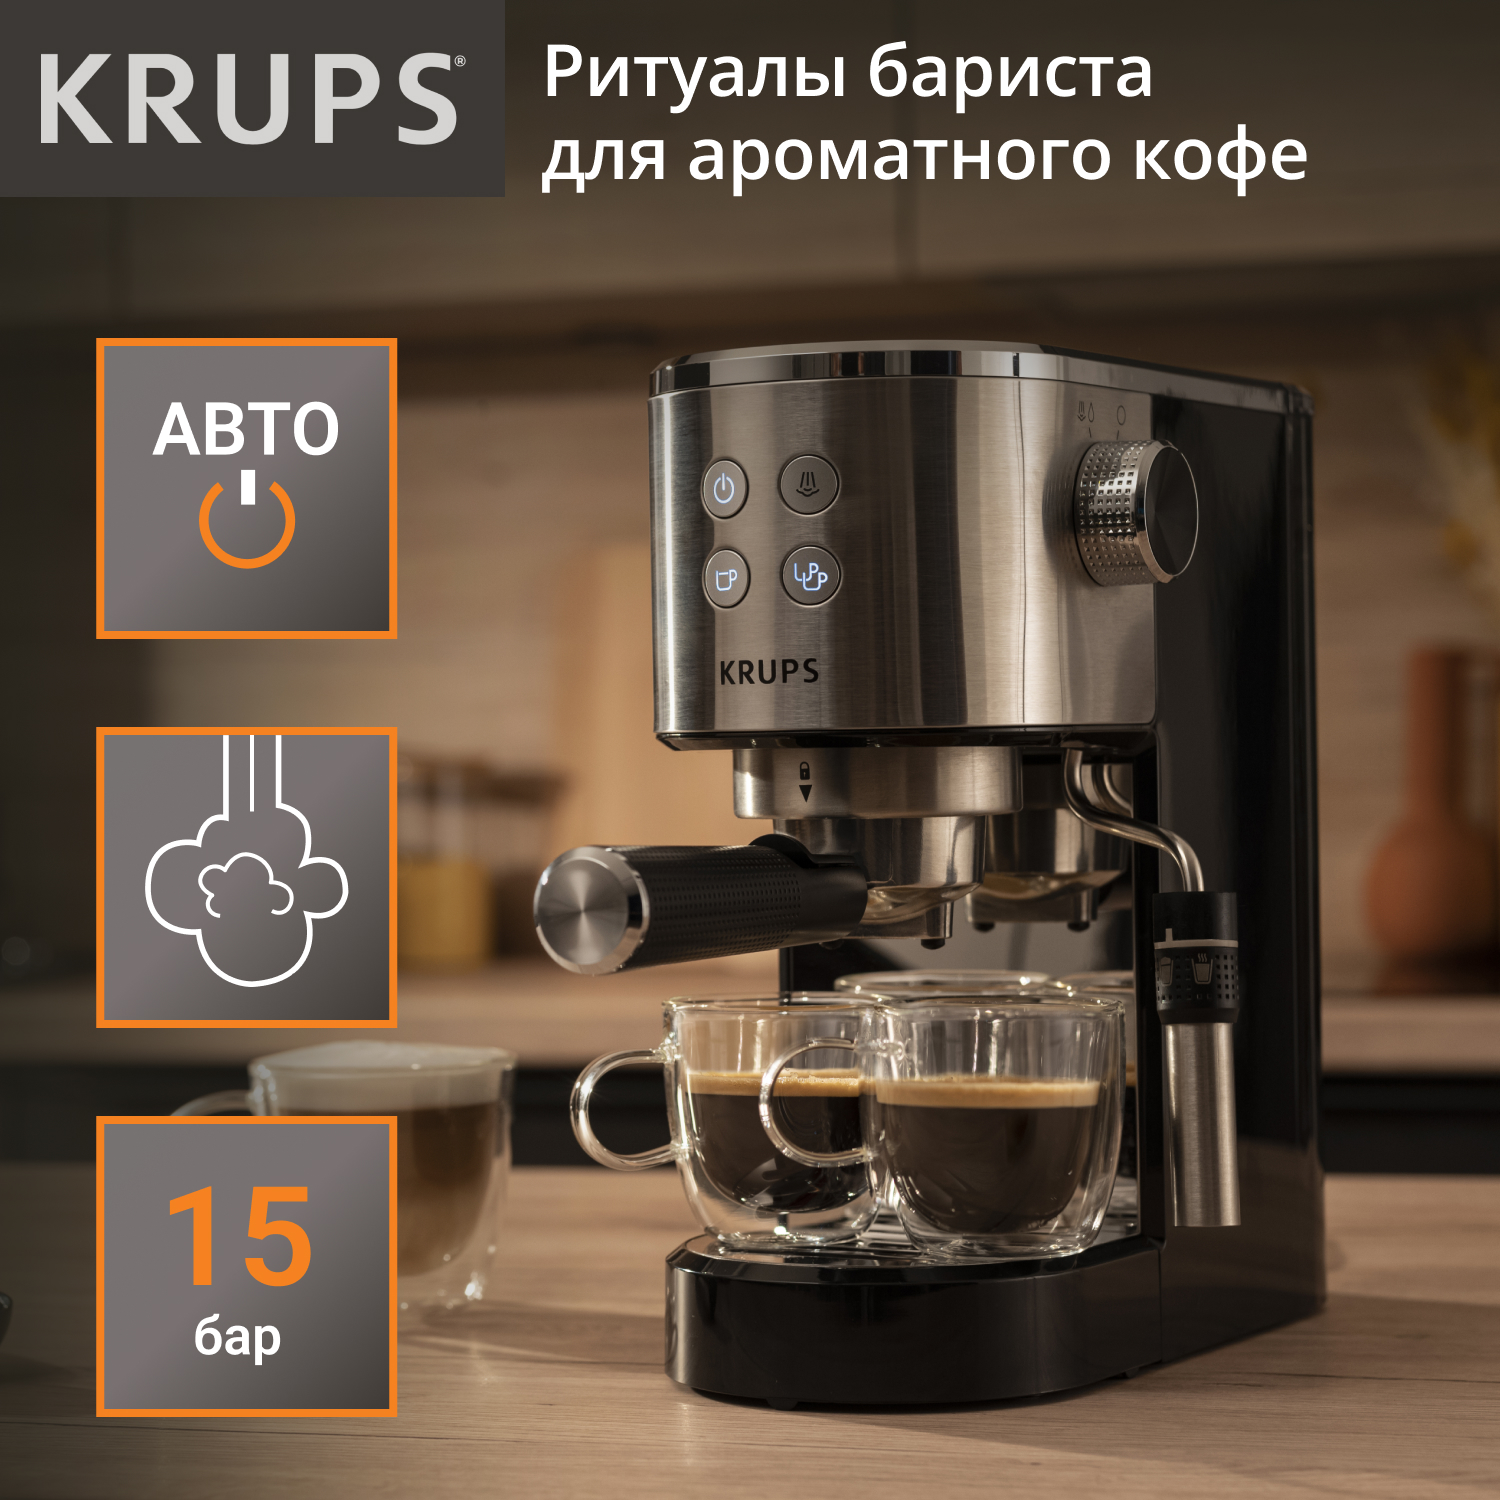 Рожковая кофеварка KRUPS XP444C10 серебристая, черная рожковая кофеварка krups xp444c10 серебристый